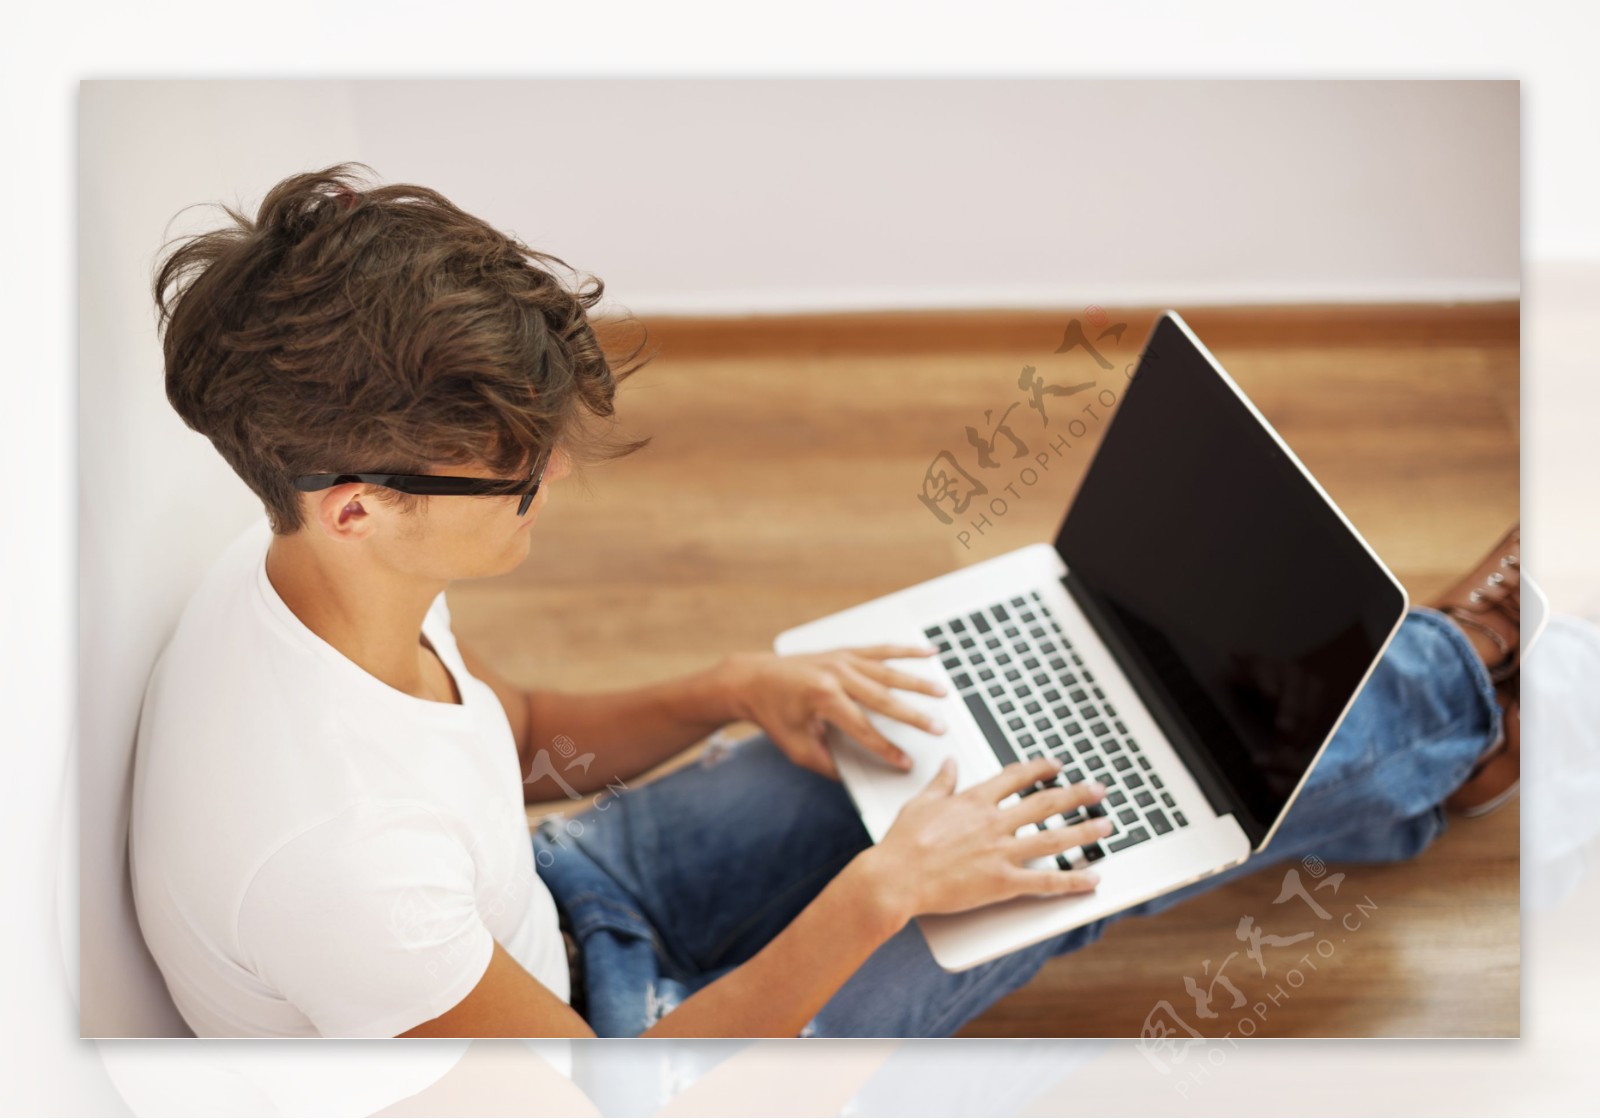 坐在地板上操作电脑的男性图片